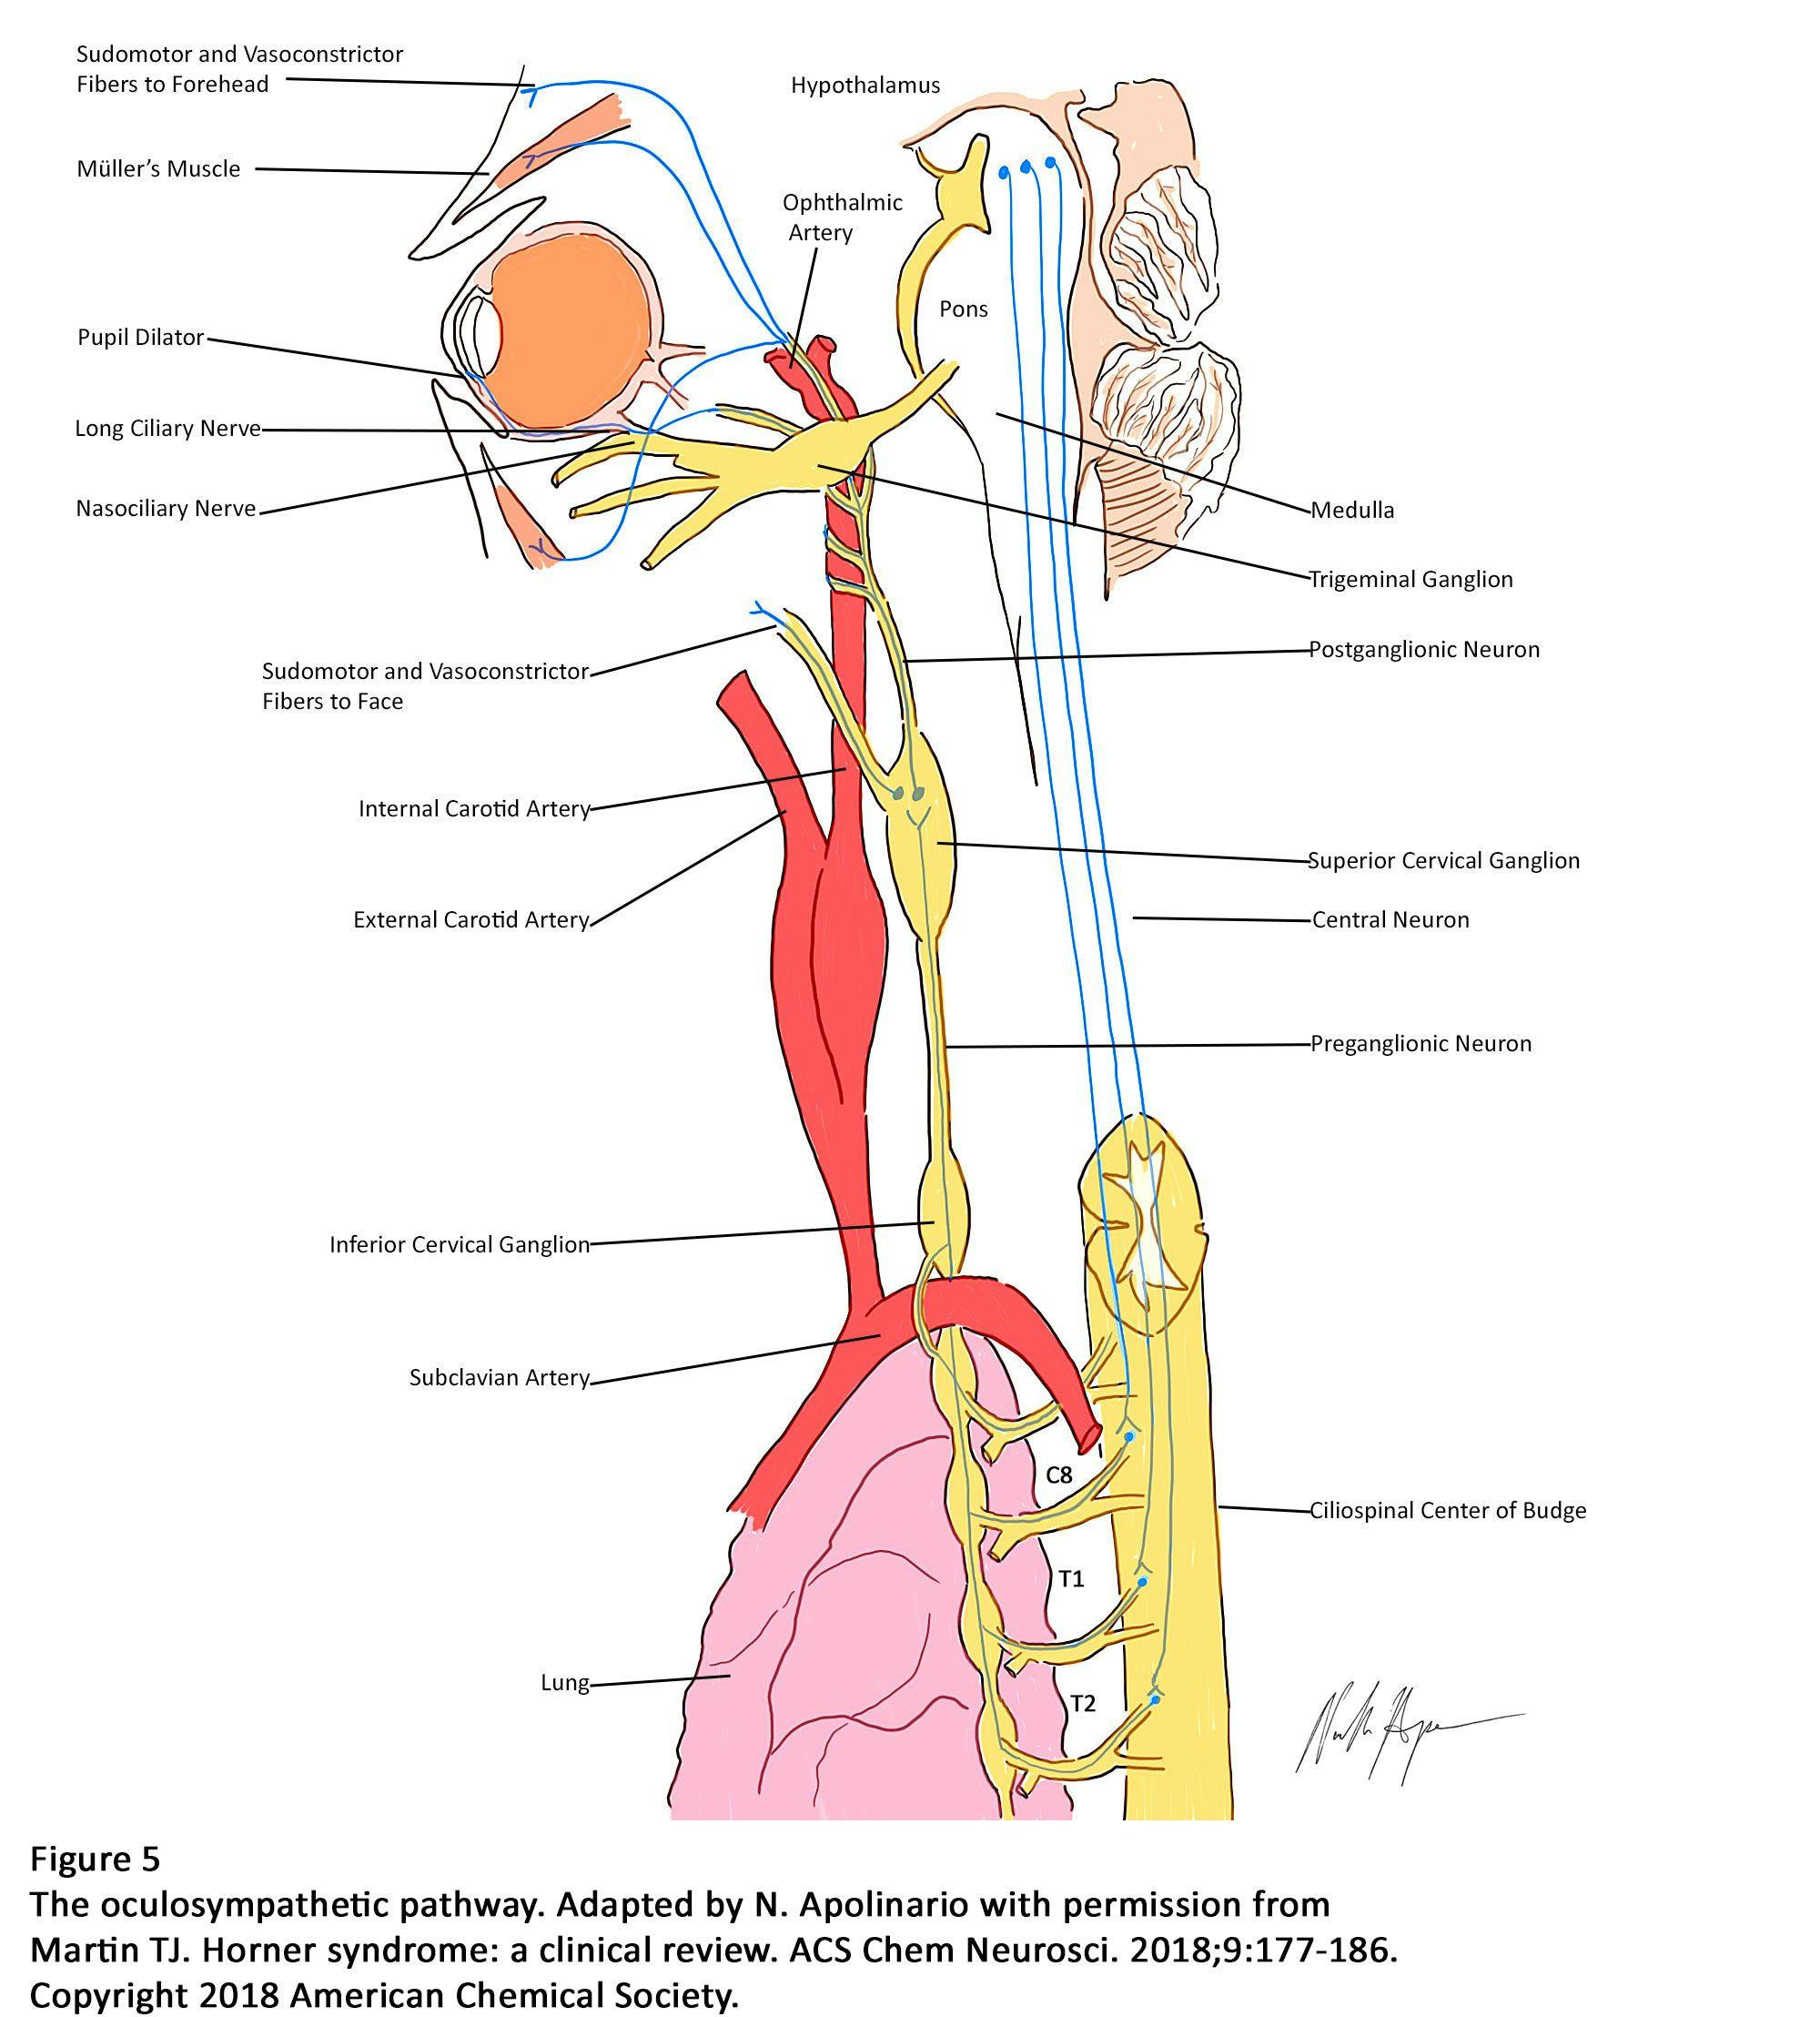  Figure 5. The oculosympathetic pathway